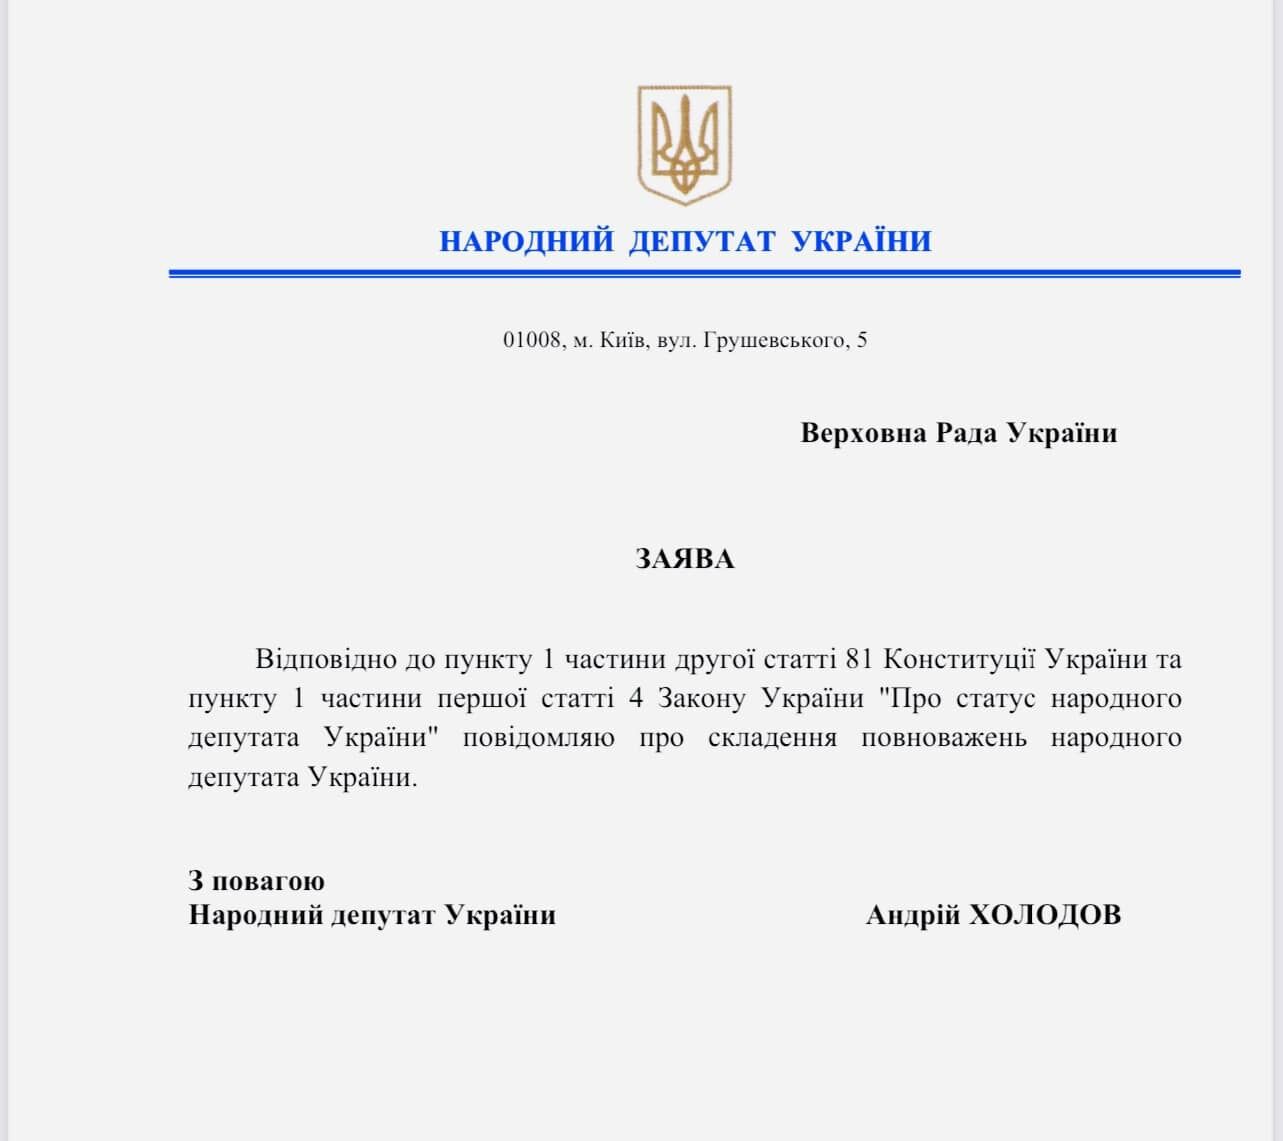 "Слуга" Холодов подал заявление на сложение депутатских полномочий. Документ